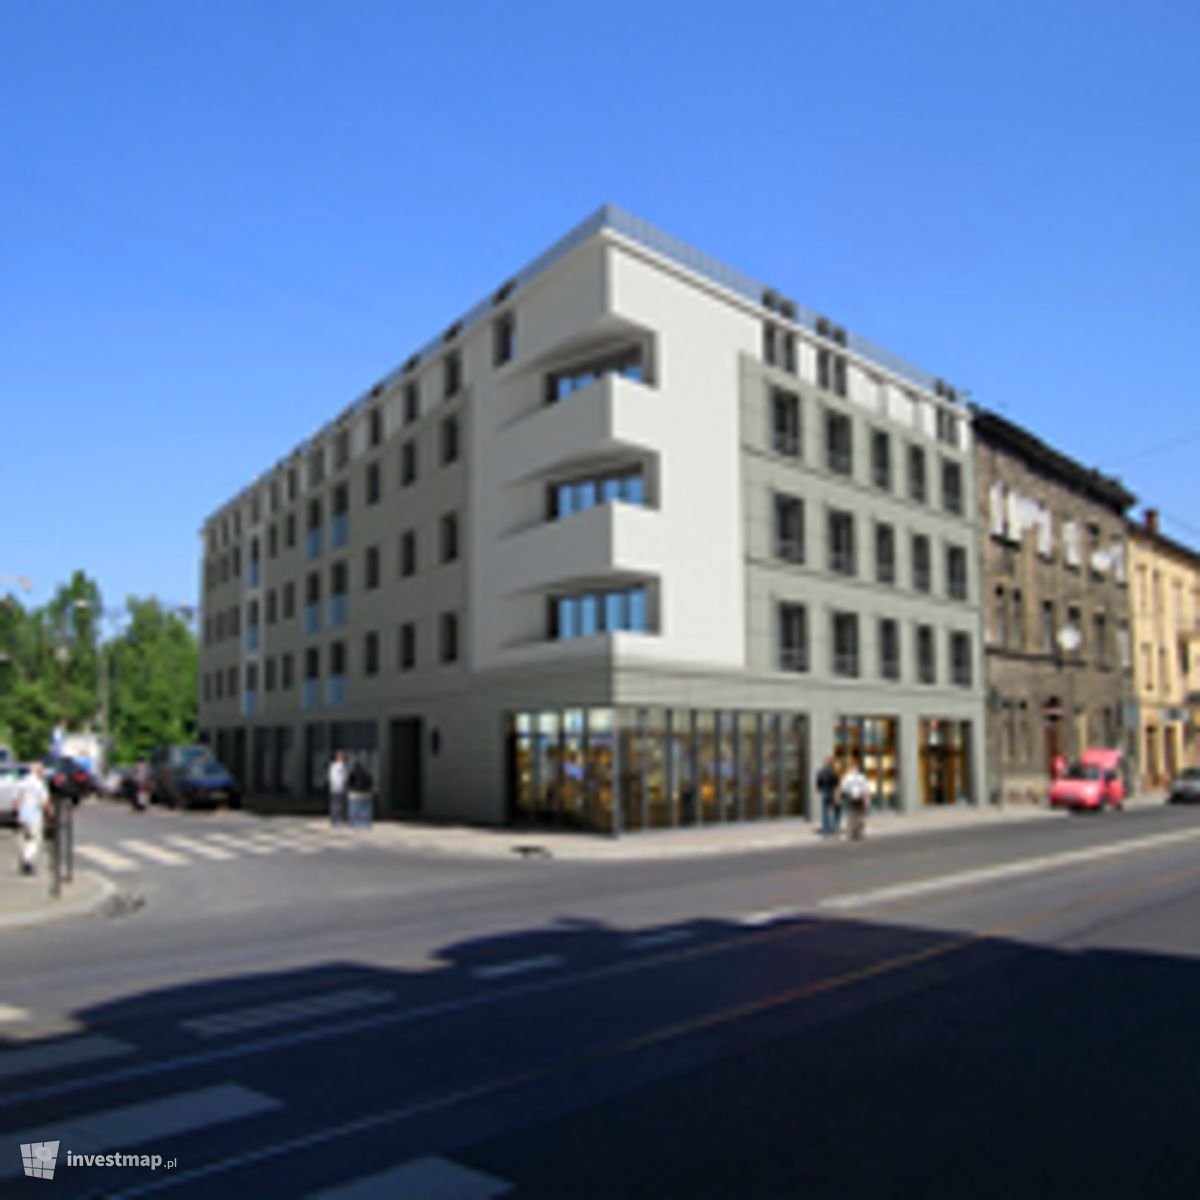 Wizualizacja [Kraków] Budynek wielorodzinny "Mellanita Apartments" dodał tomasz.witko 